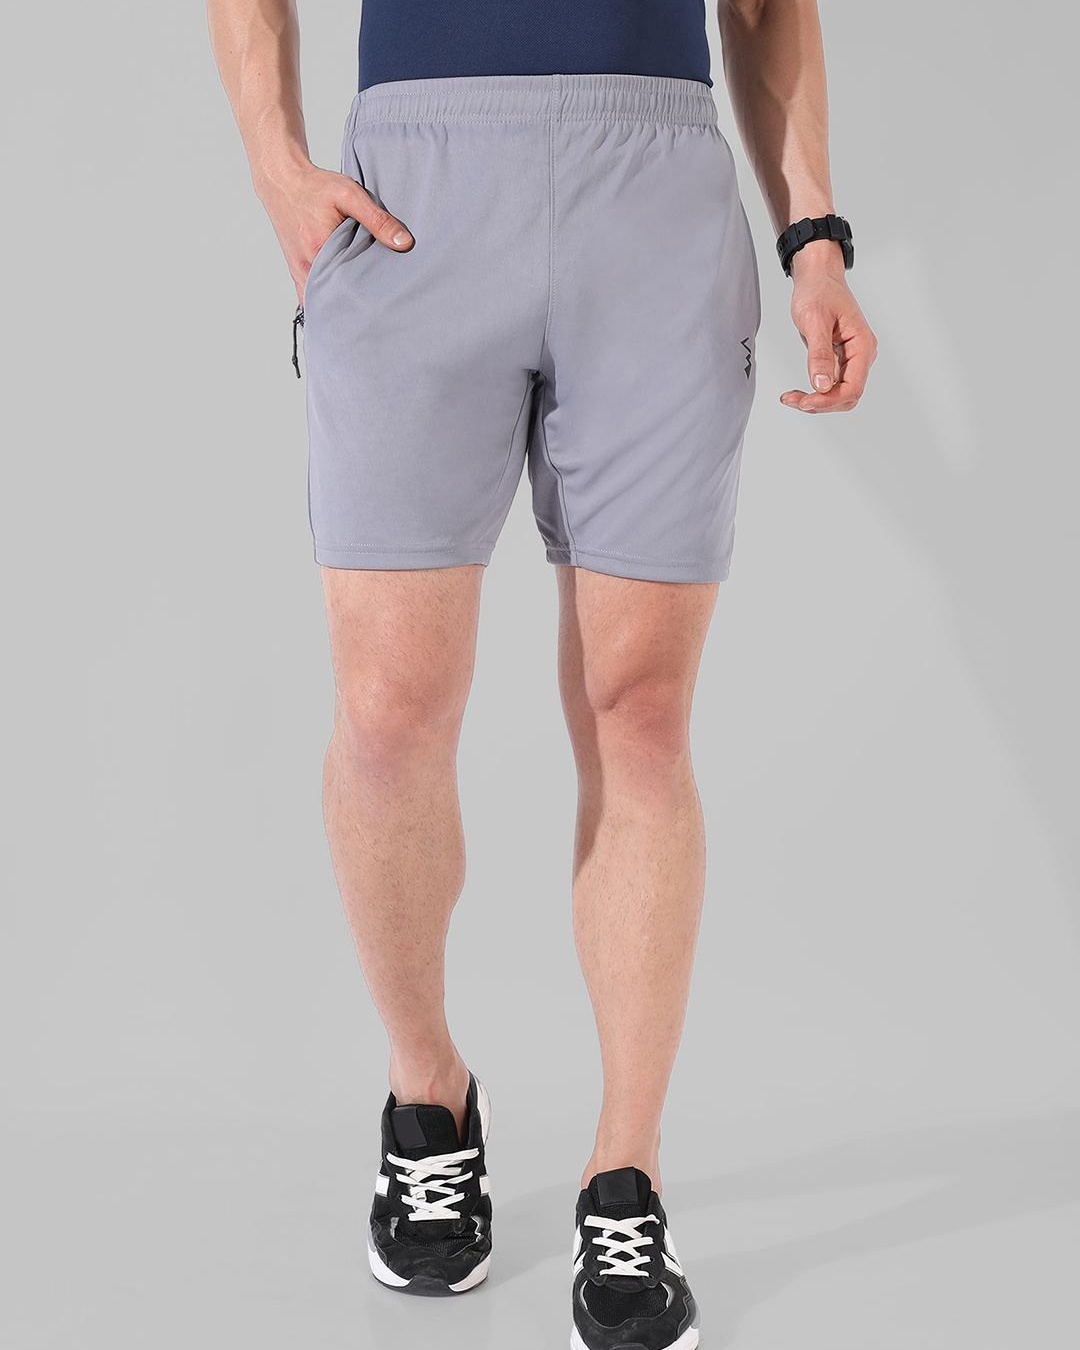 Buy Men's Grey Shorts for Men Grey Online at Bewakoof